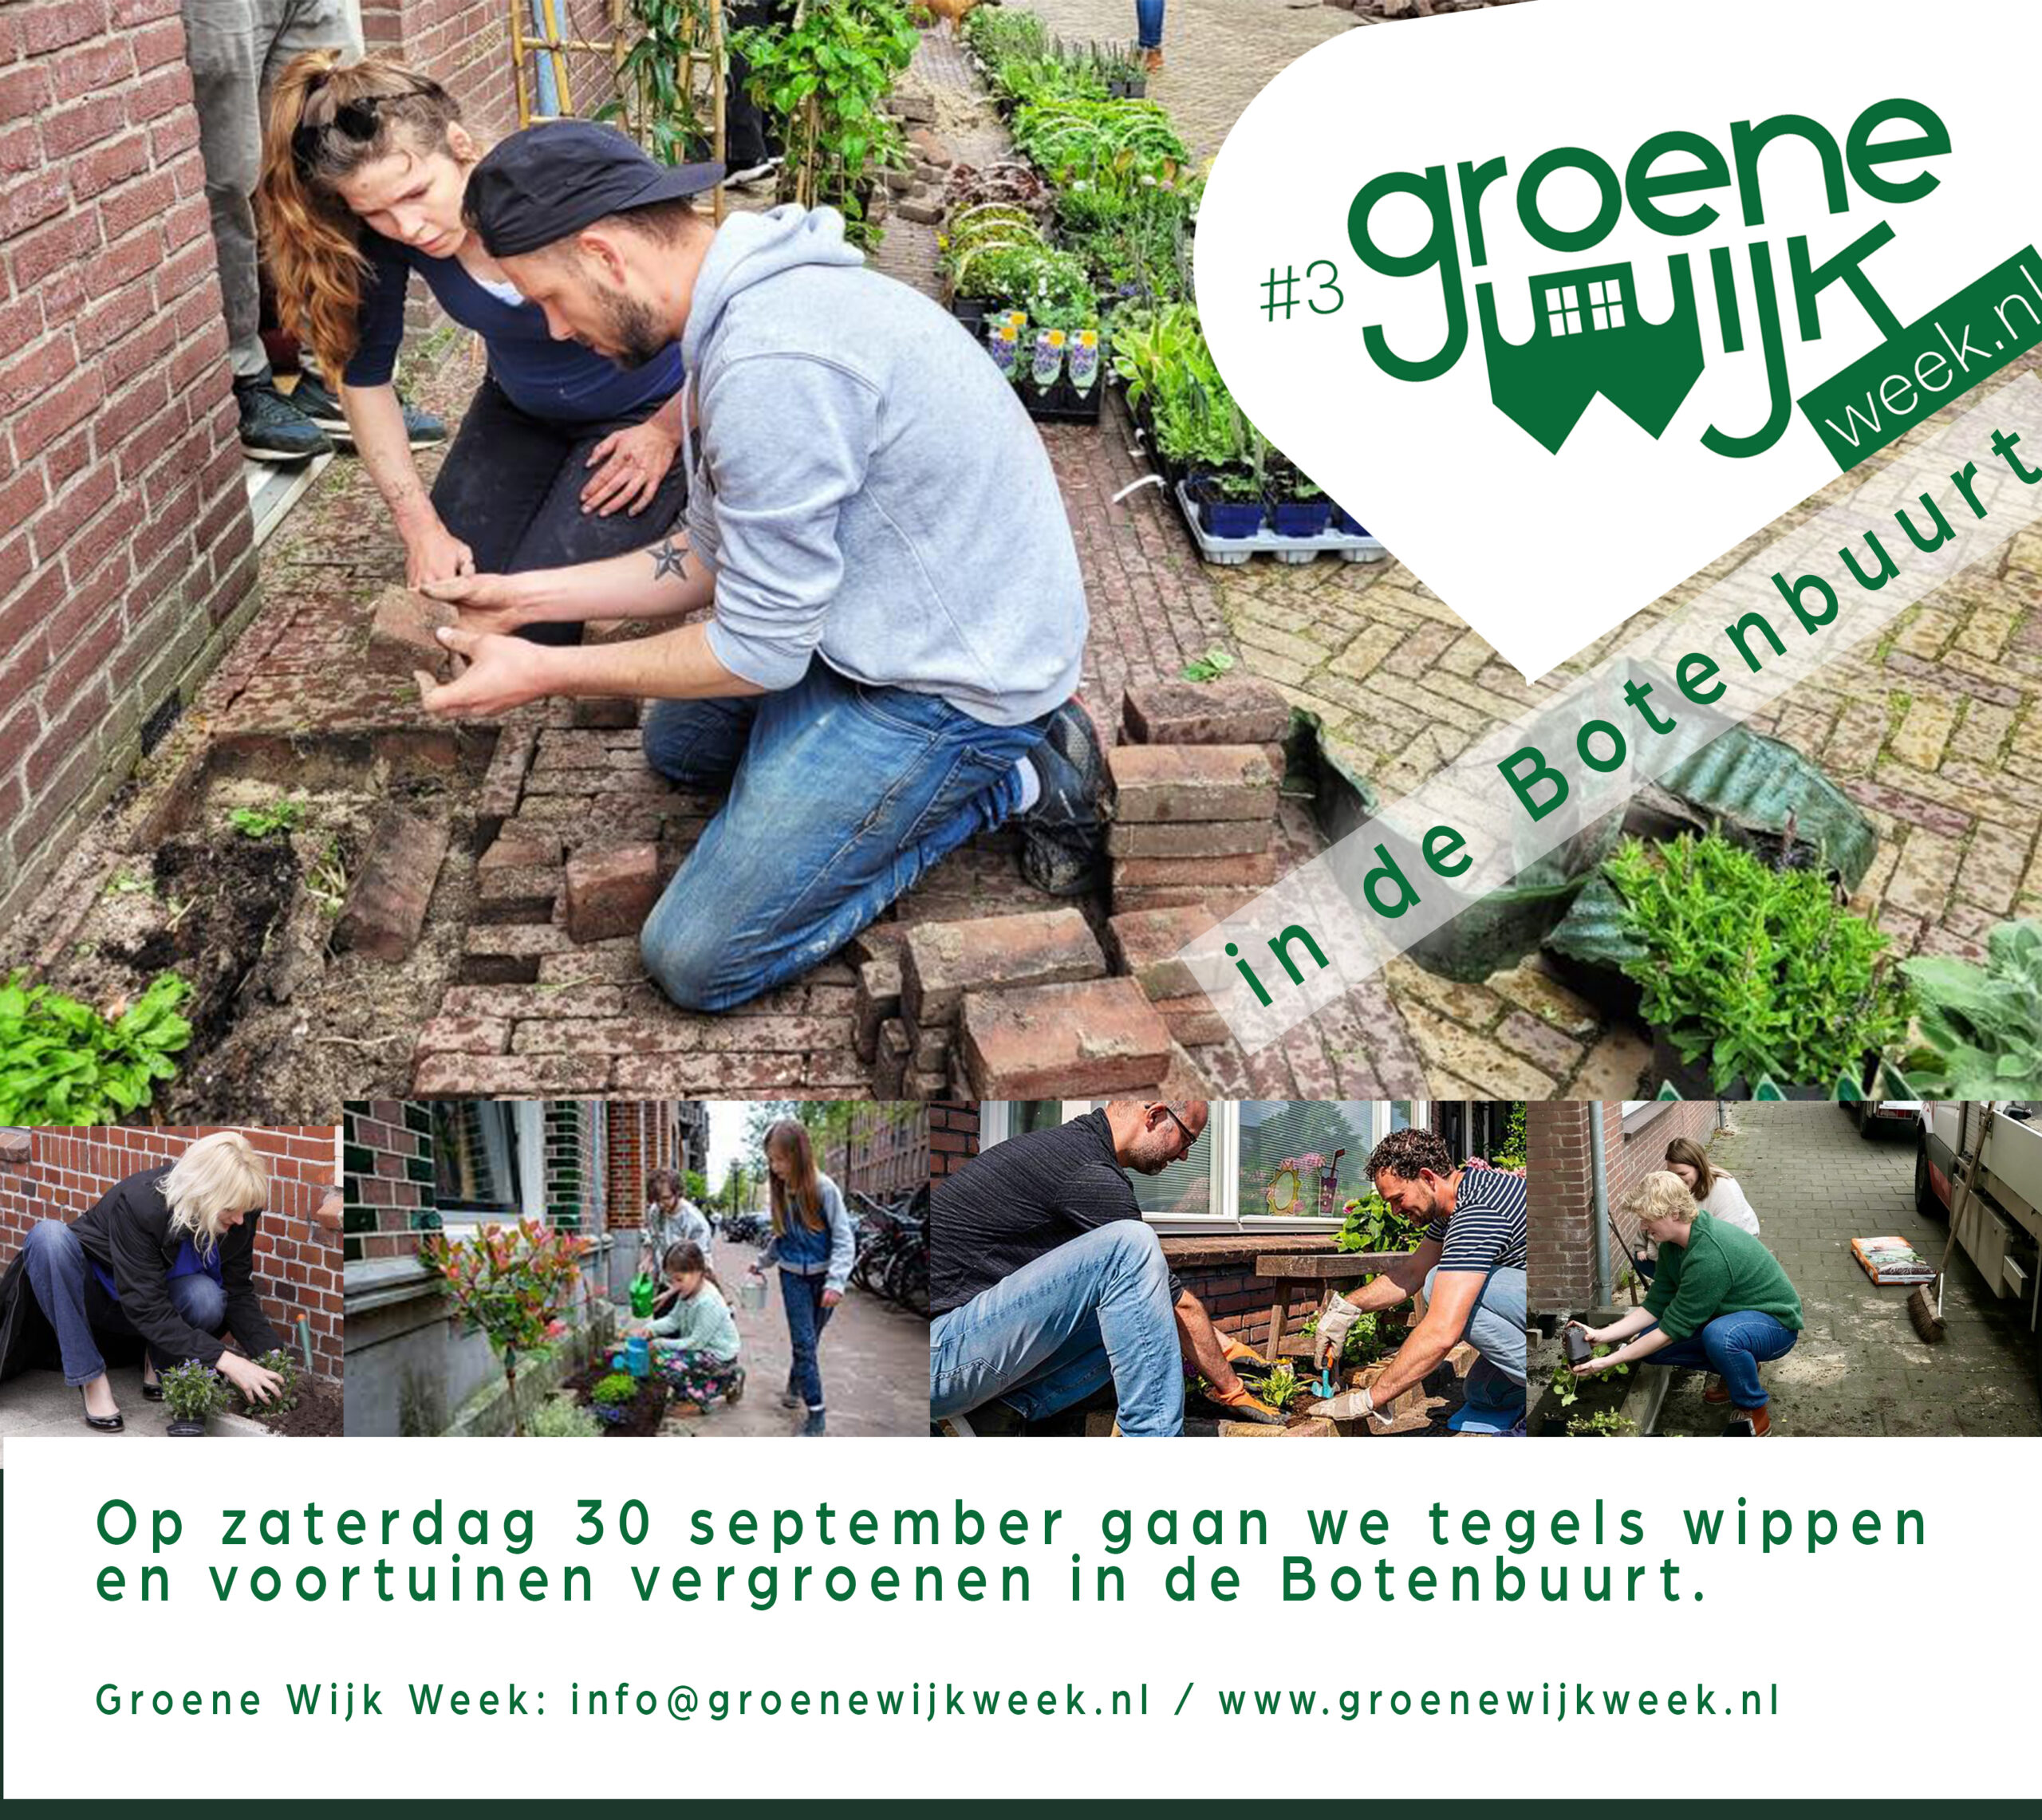 Vergroenen in uw buurt Buurthuis de meerpaal eindhoven - Groene Wijk Week in de Botenbuurt